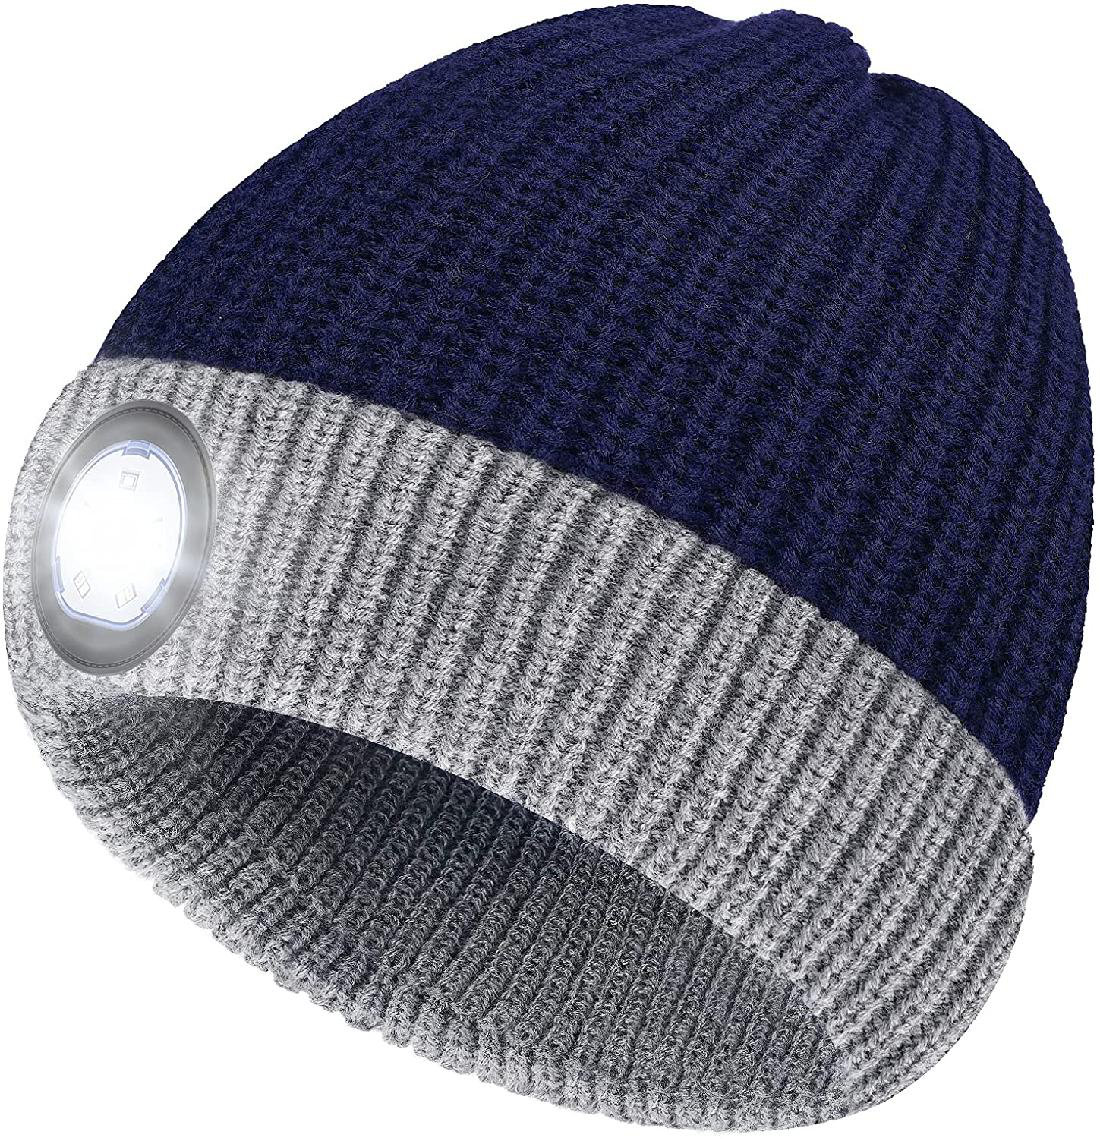 LED Beanie Hat Gifts for Men Women Stocking Stuffers for Men Christmas Birthday